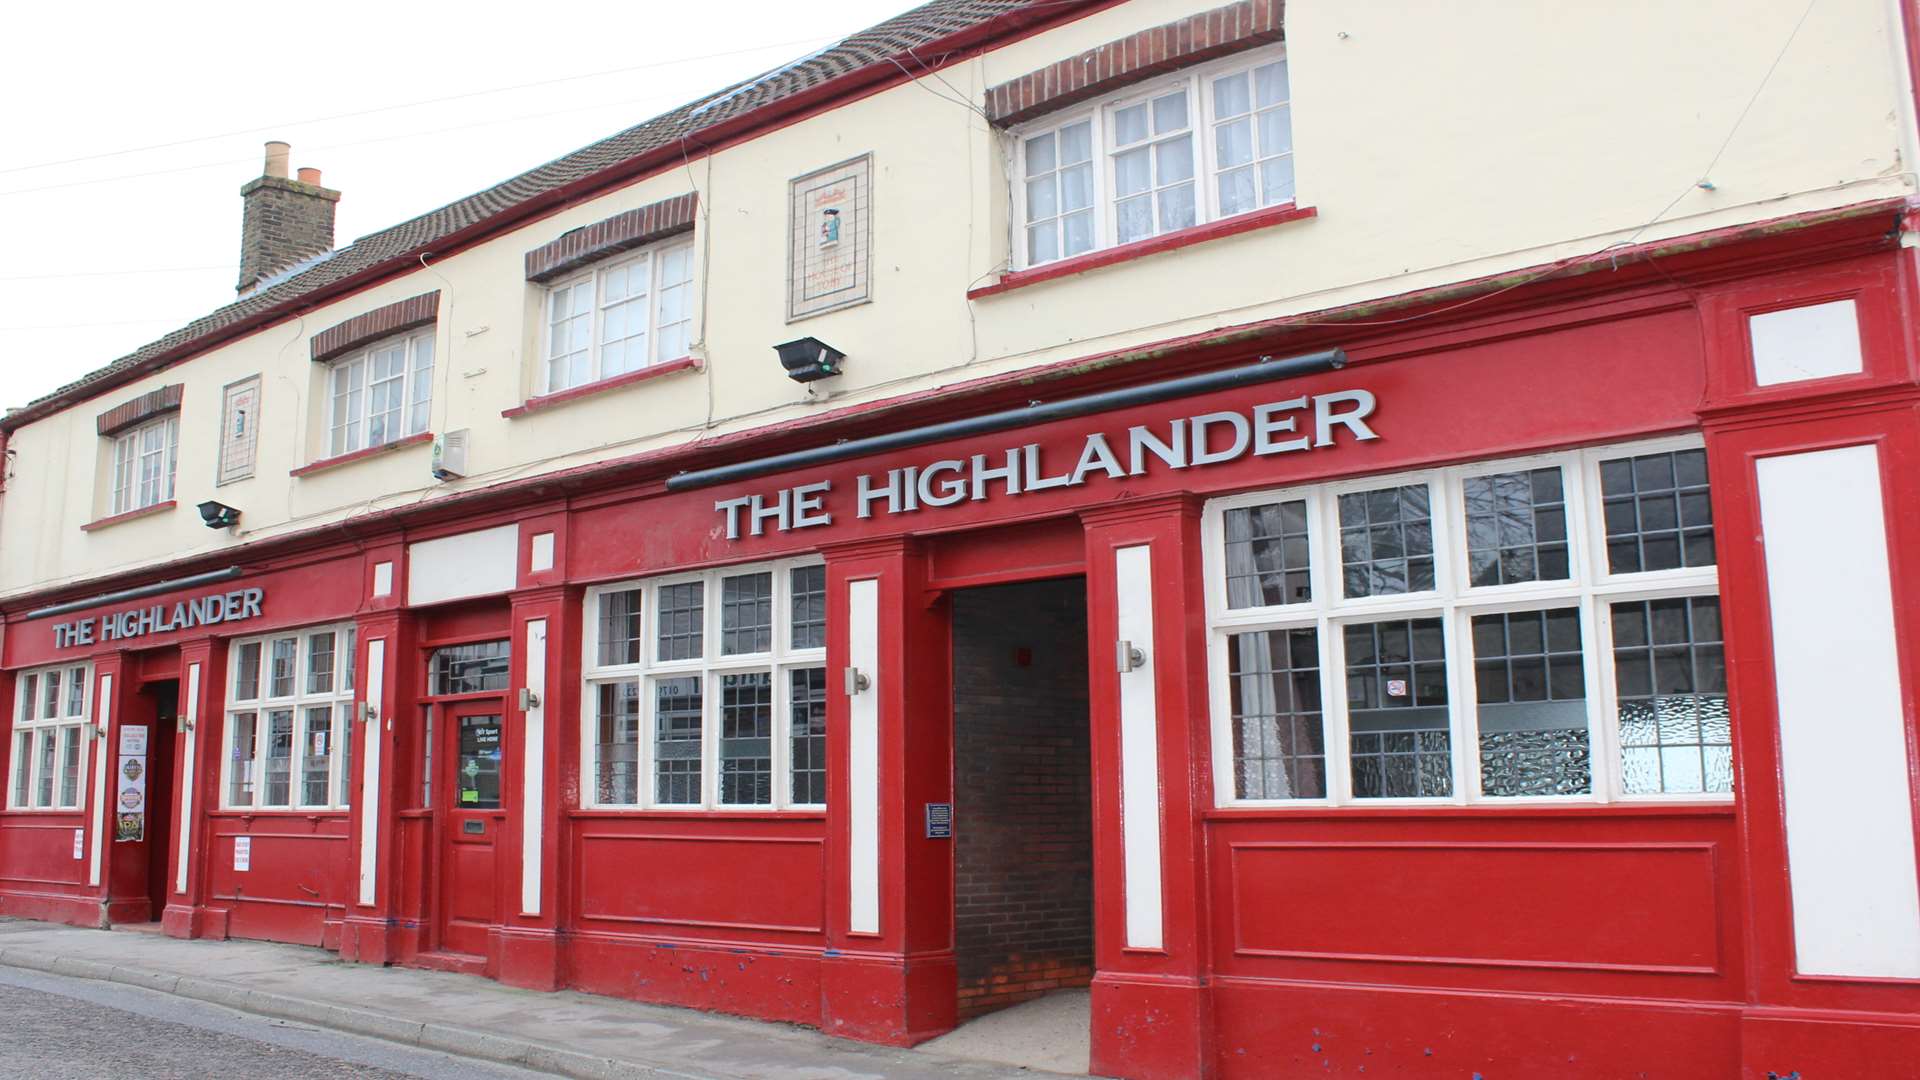 The Highlander pub, Minster village, Sheppey